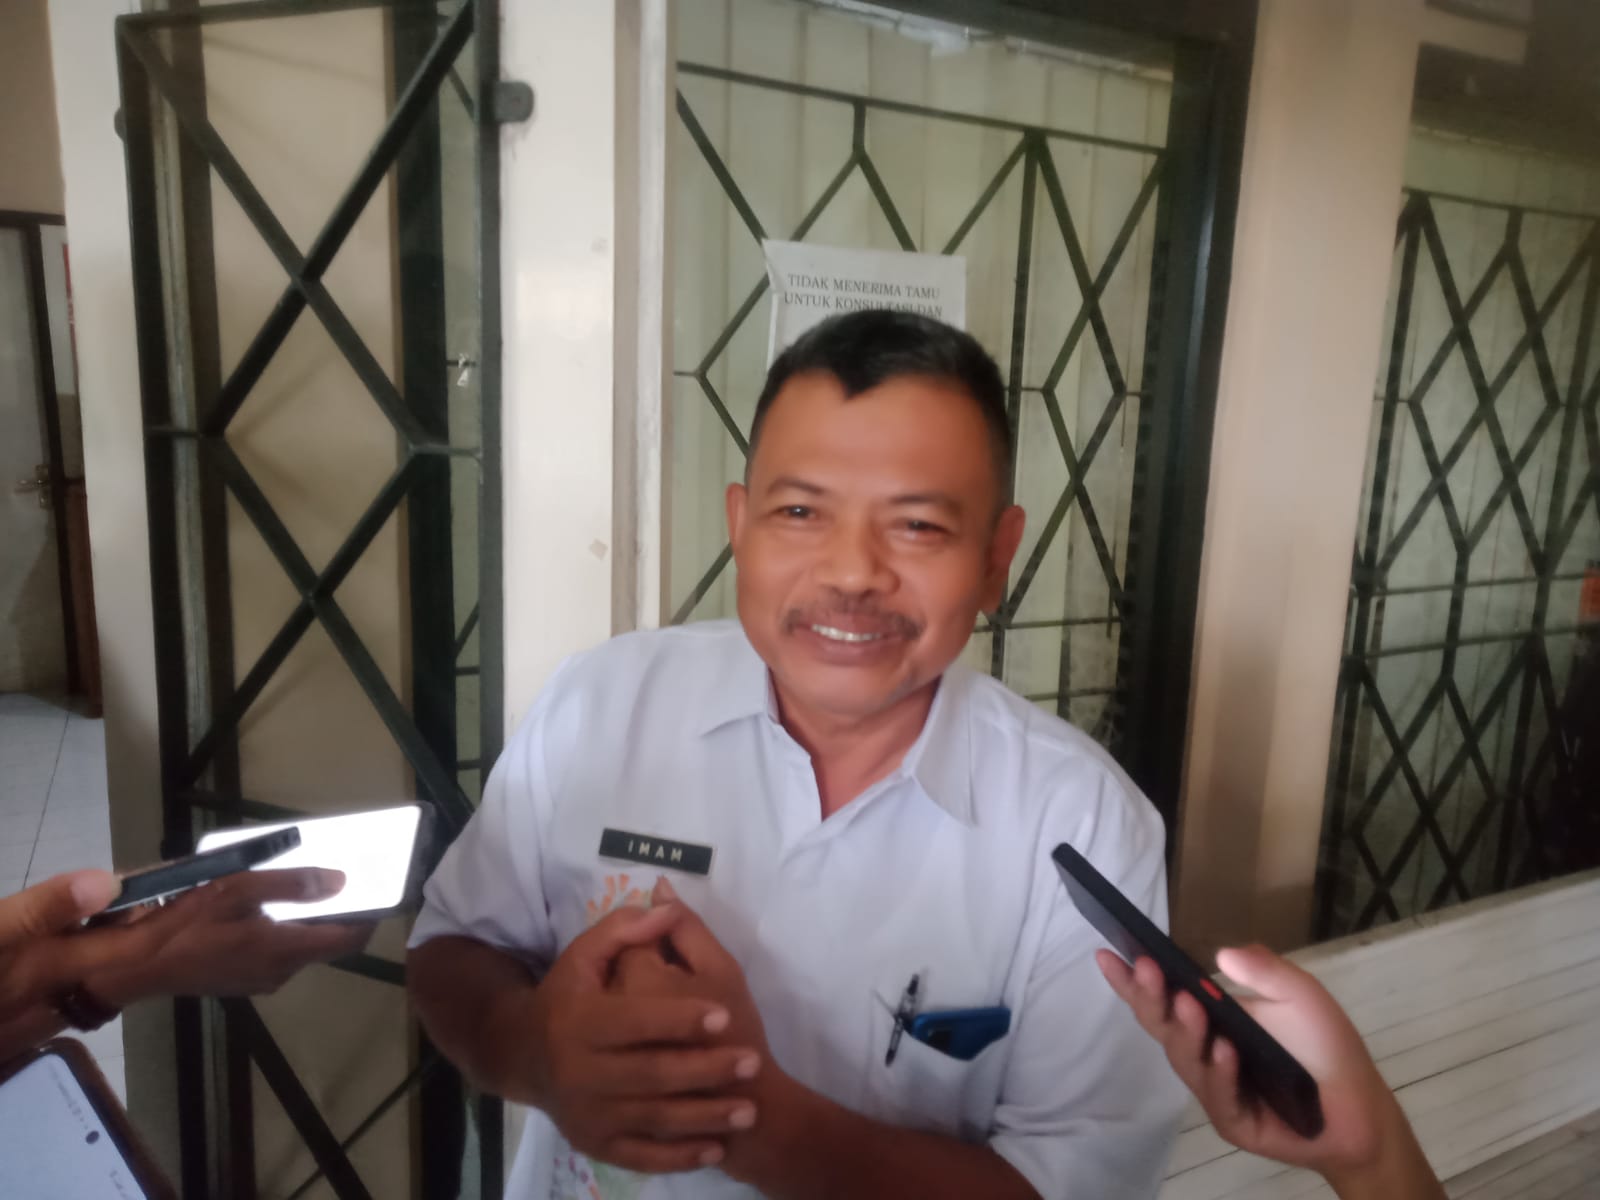 Kabid Pedagang Kaki Lima (PKL) Dinas Perdagangan Kabupaten Kudus, Imam Prayitno